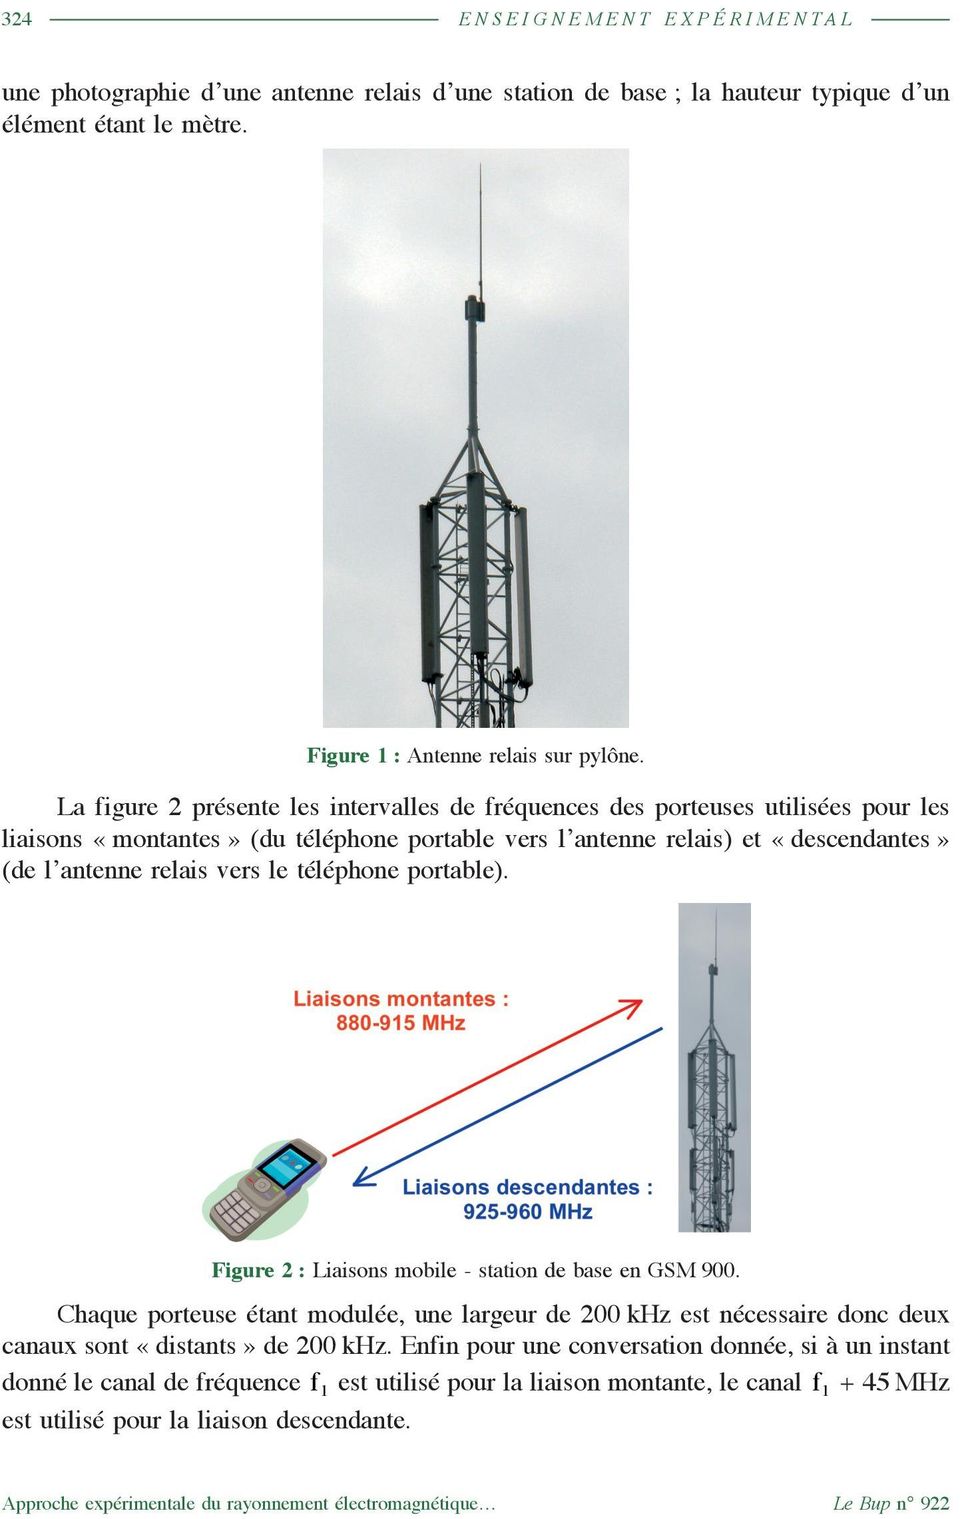 téléphone portable). Figure 2 : Liaisons mobile - station de base en GSM 900. Chaque porteuse étant modulée, une largeur de 200 khz est nécessaire donc deux canaux sont «distants» de 200 khz.